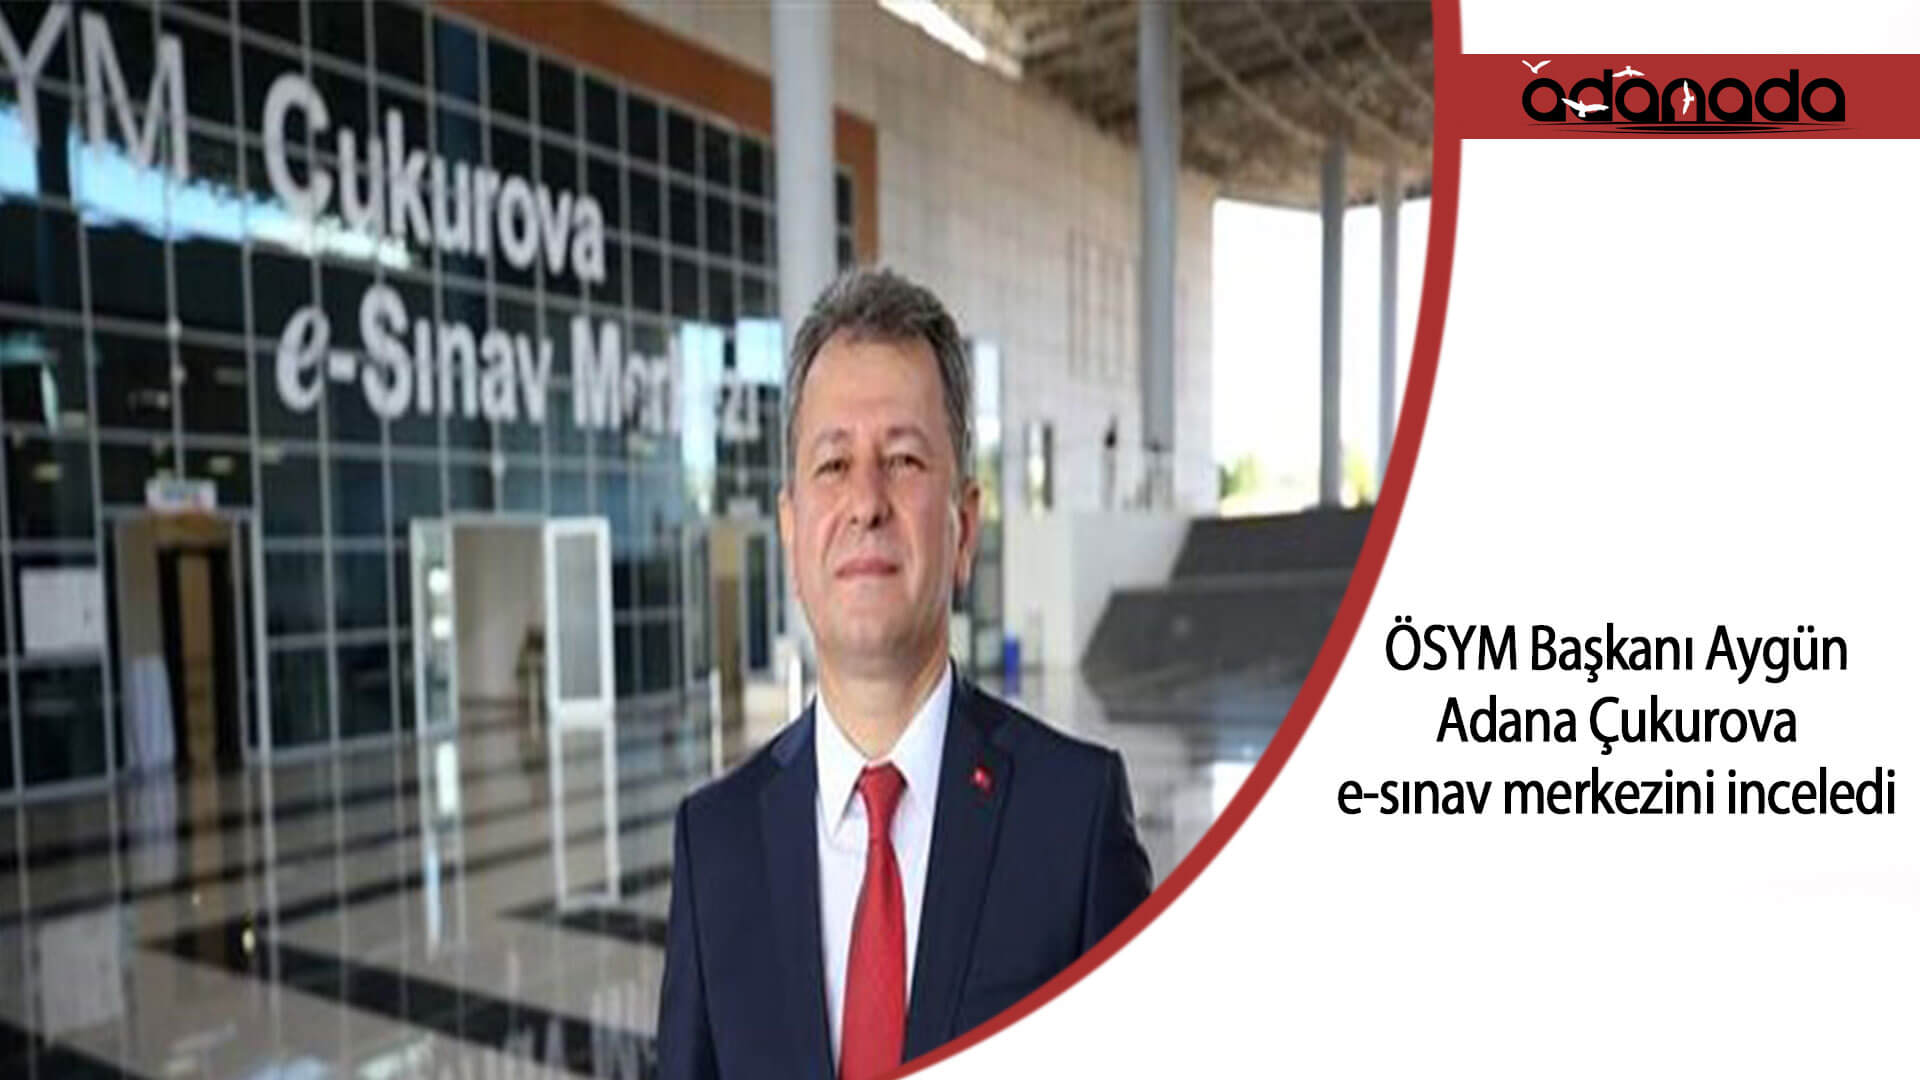 ÖSYM Başkanı Aygün, Adana Çukurova e-sınav merkezini inceledi